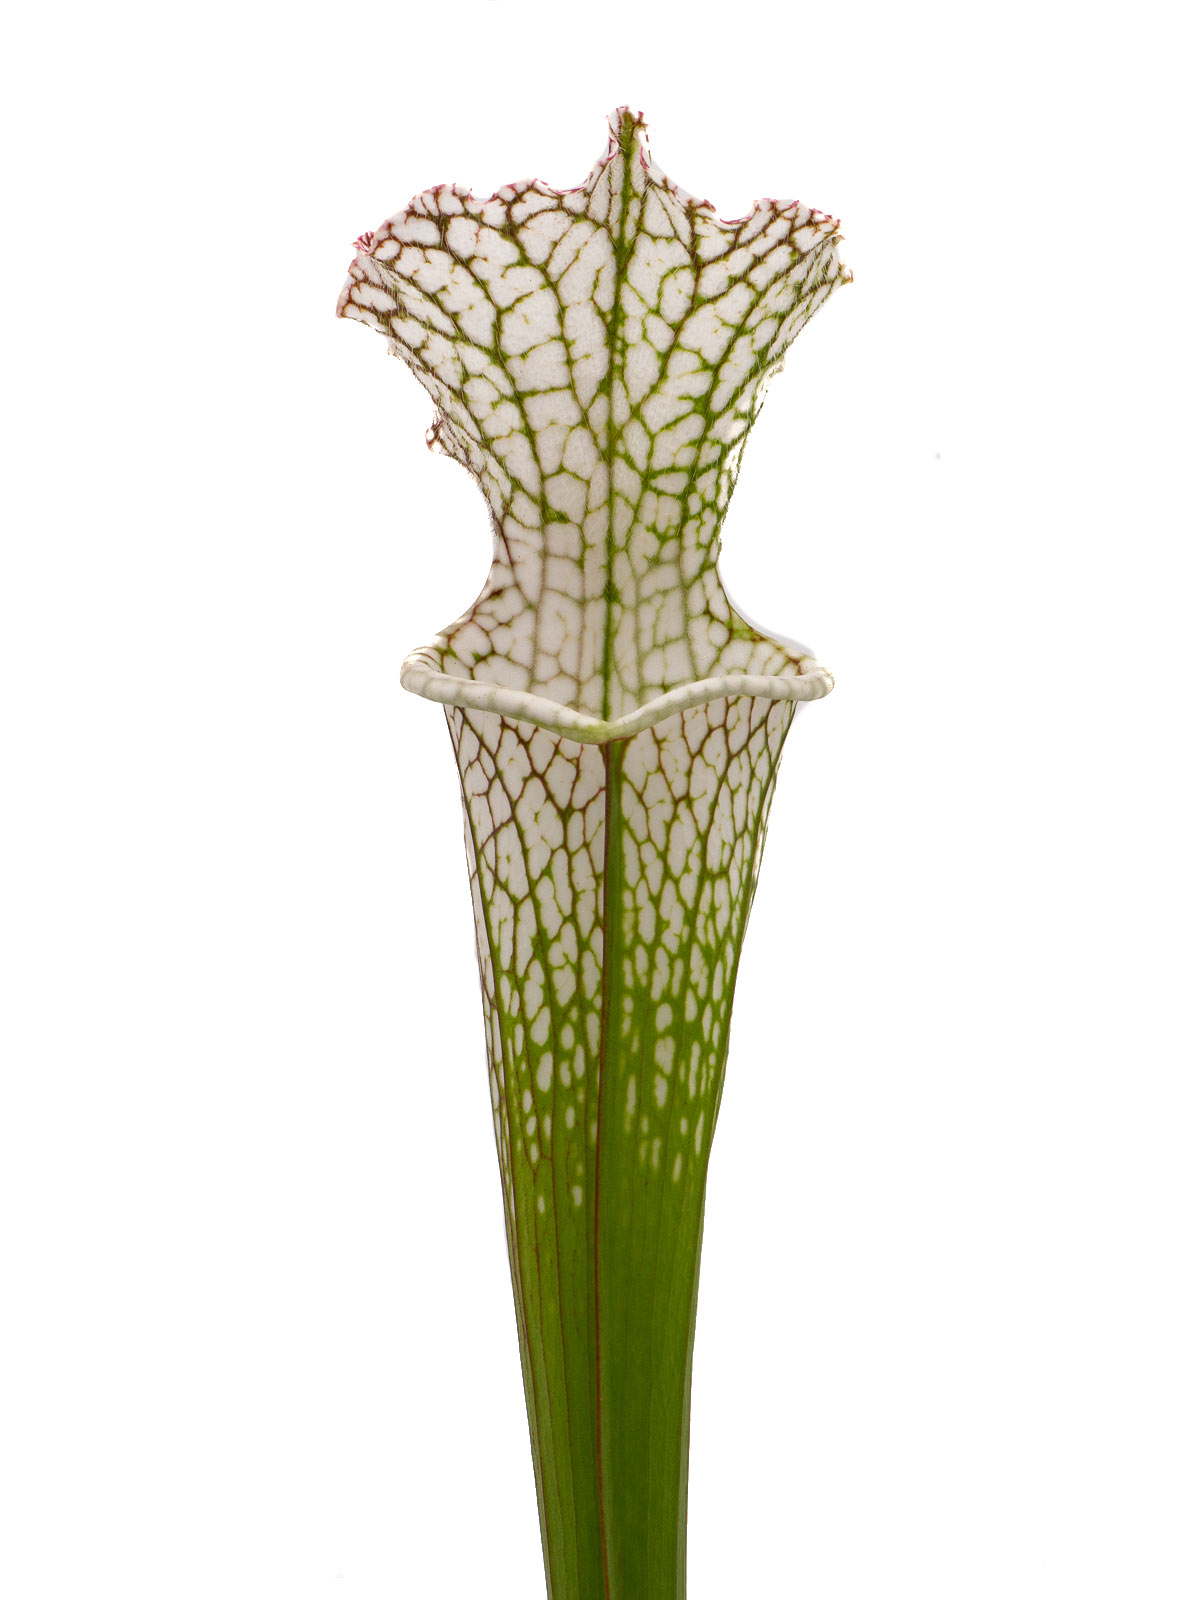 Sarracenia leucophylla - BG Mainz, 19-74690